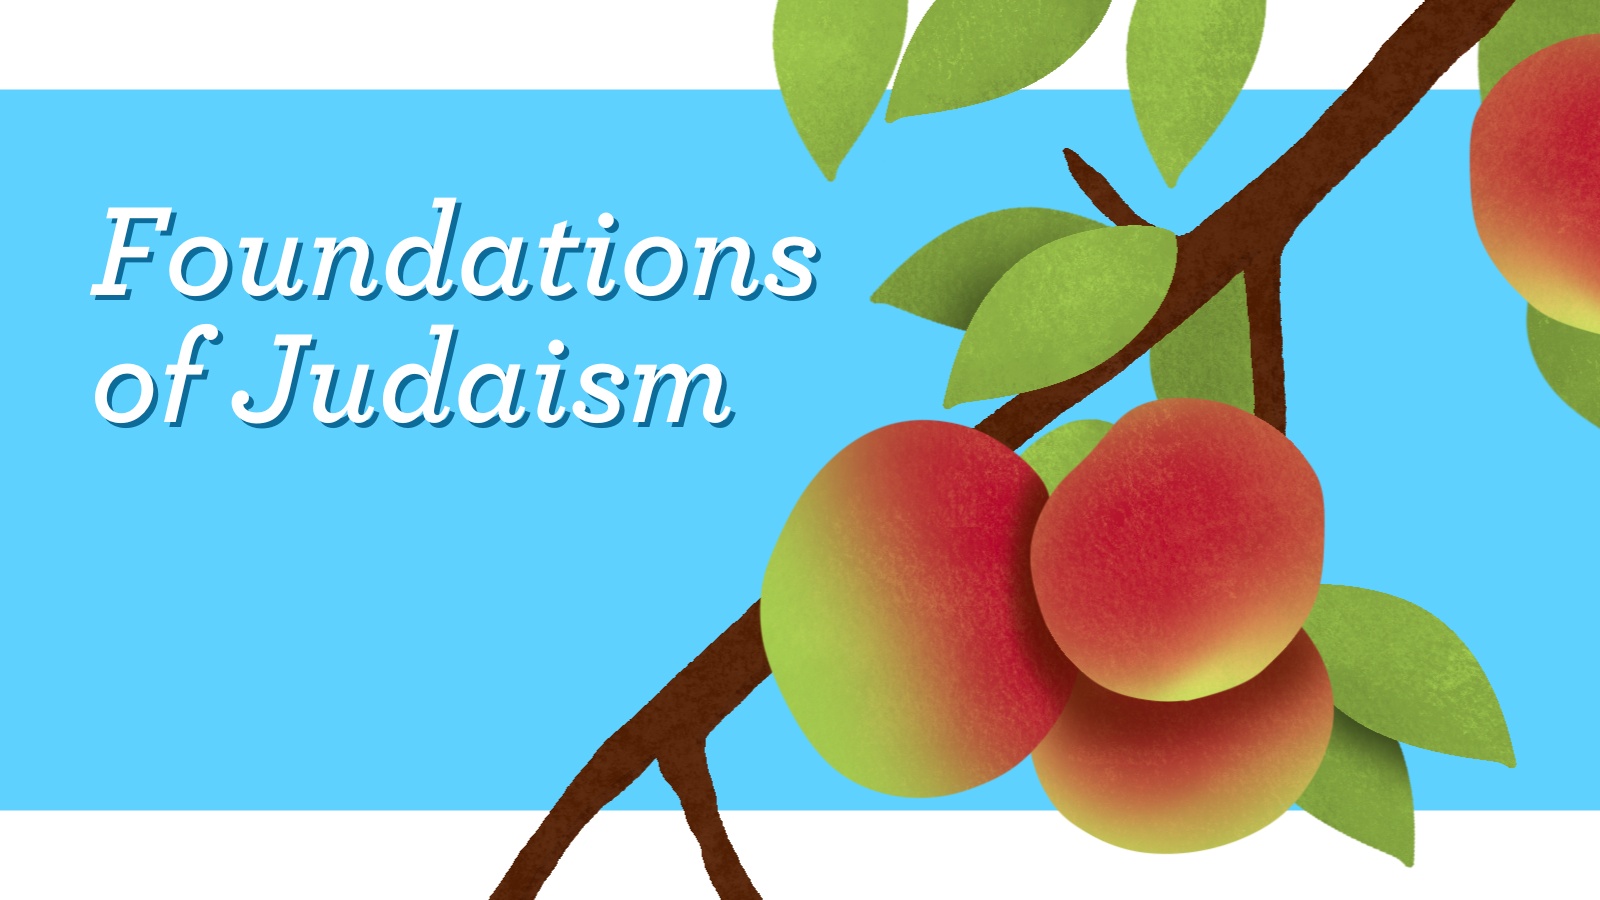 Foundations of Judaism